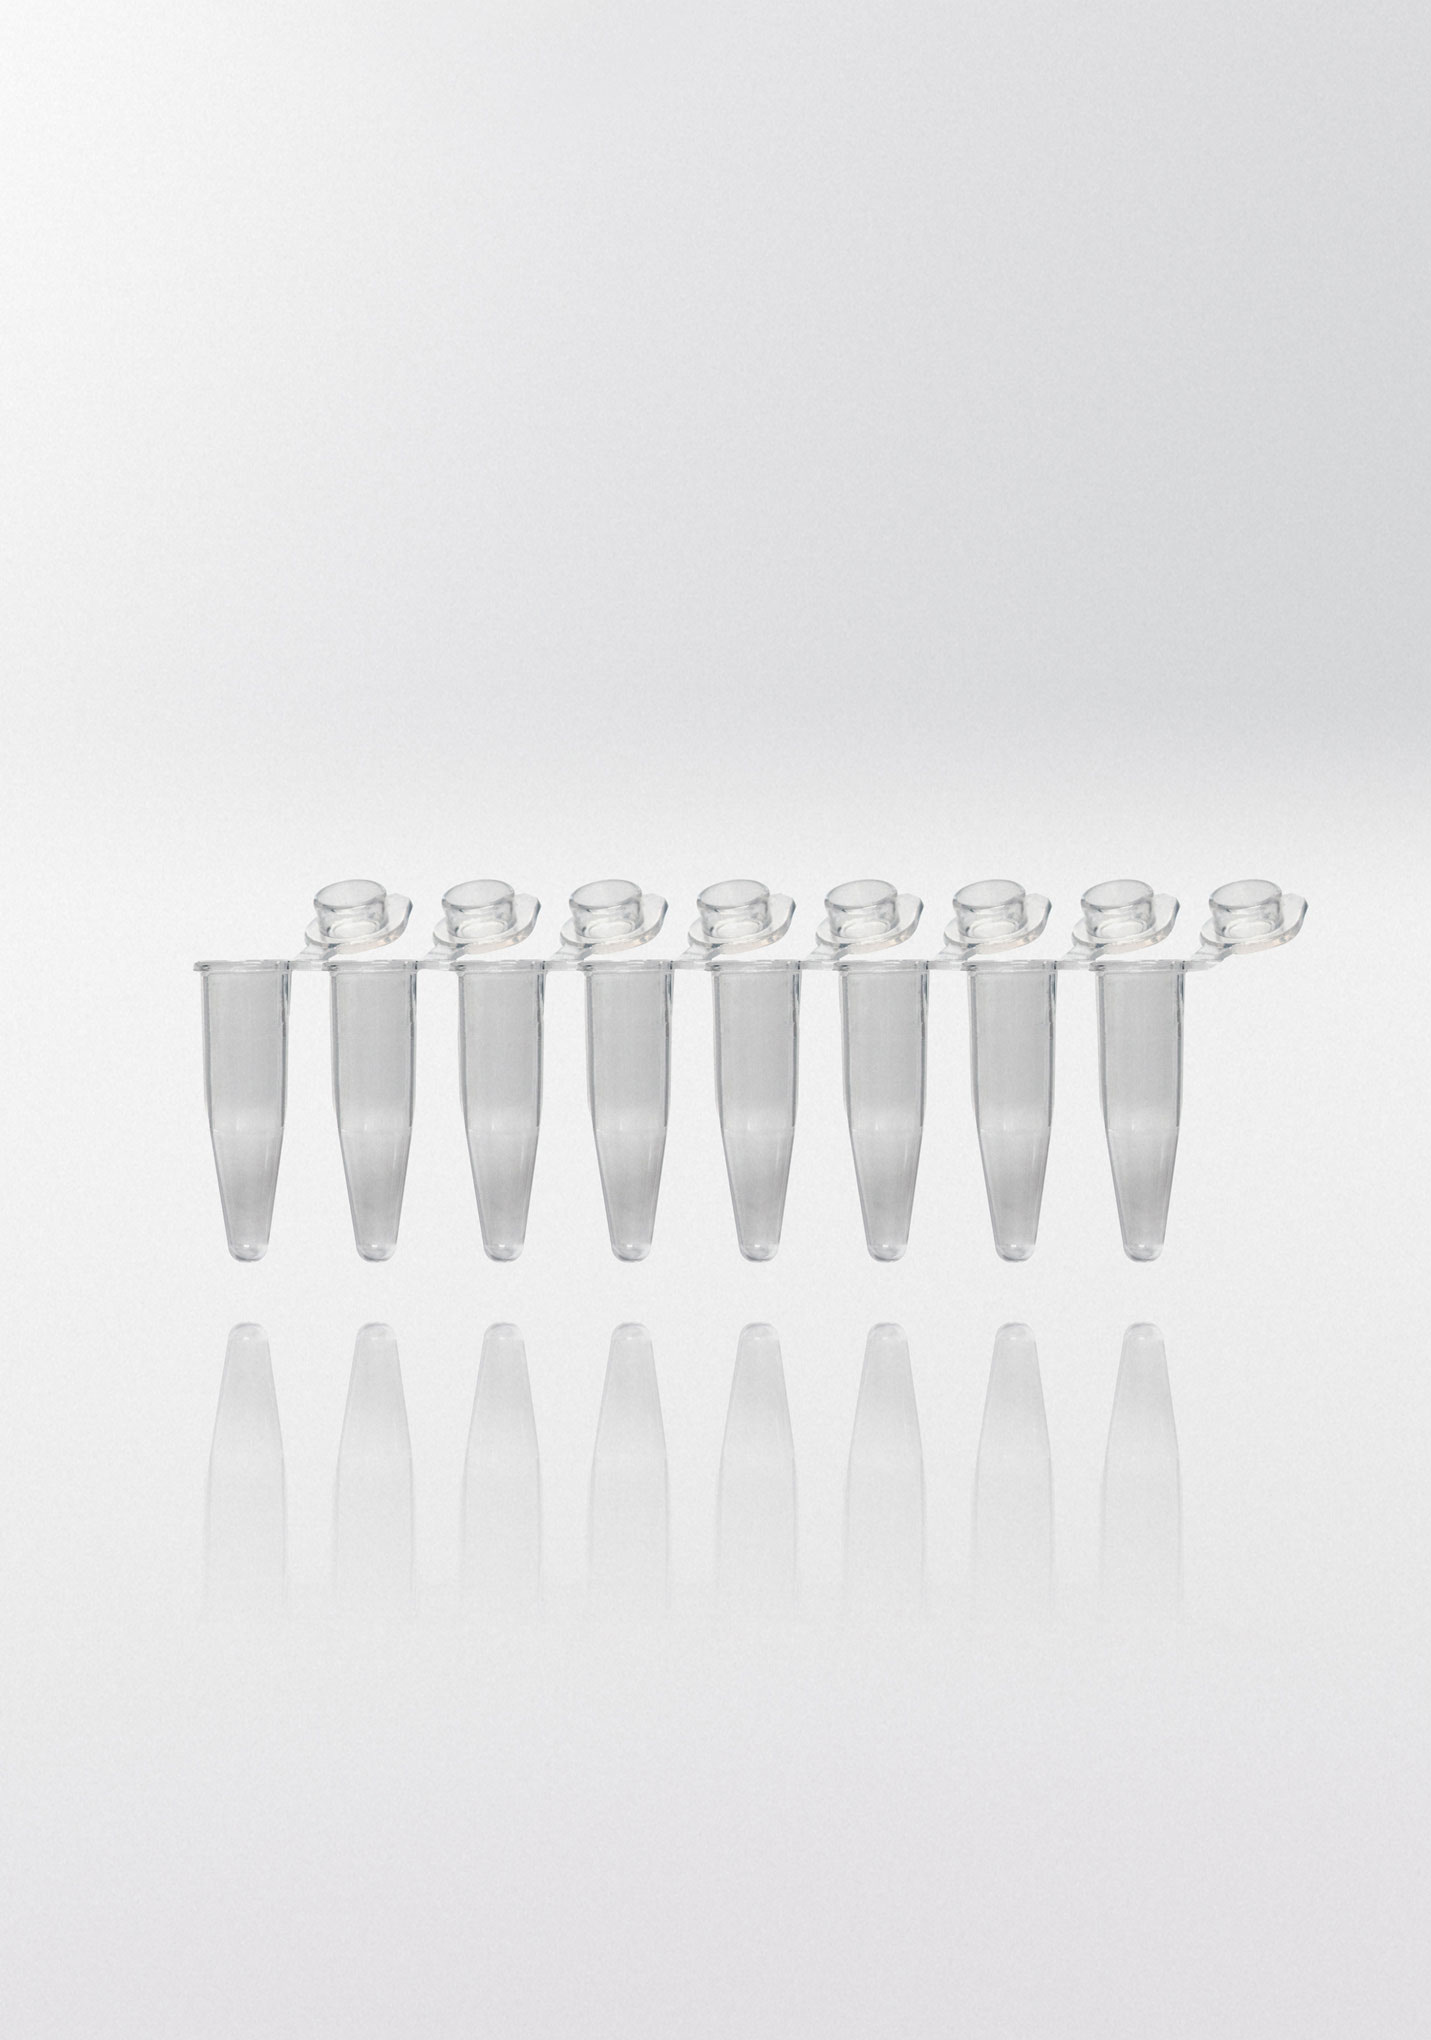 Tiras de tubos para PCR. NERBE-PLUS. Capacidad (ml): 0,2. Resist. centrif. (g): 20000. Tapón: Plano. Color tubo/tapón: Transparente/ Transparente. Esterilidad: PCR Ready. qPCR: Sí